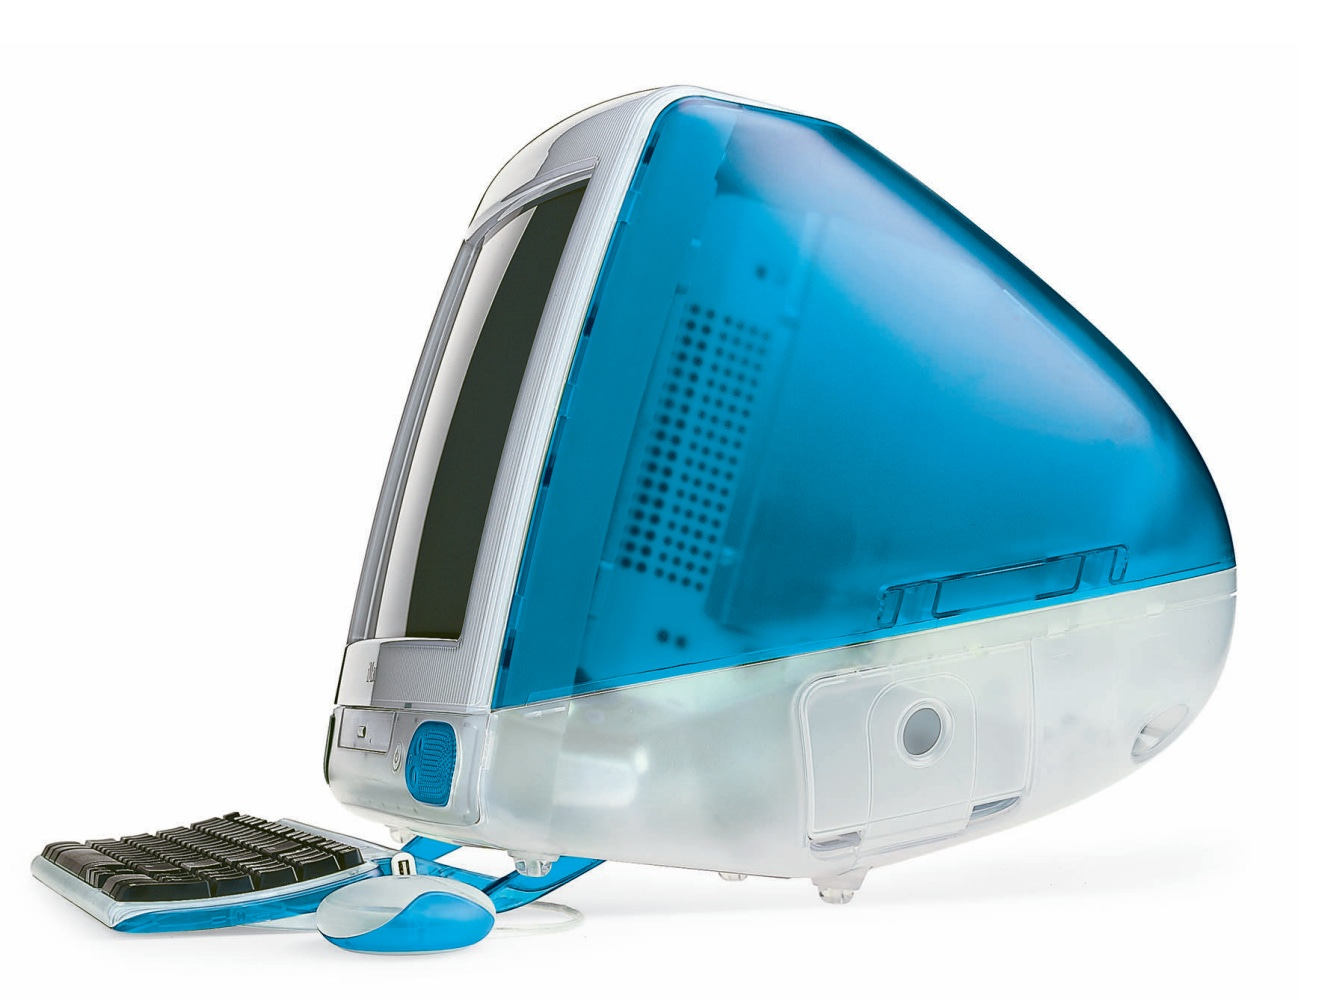 iMac G3 in blue